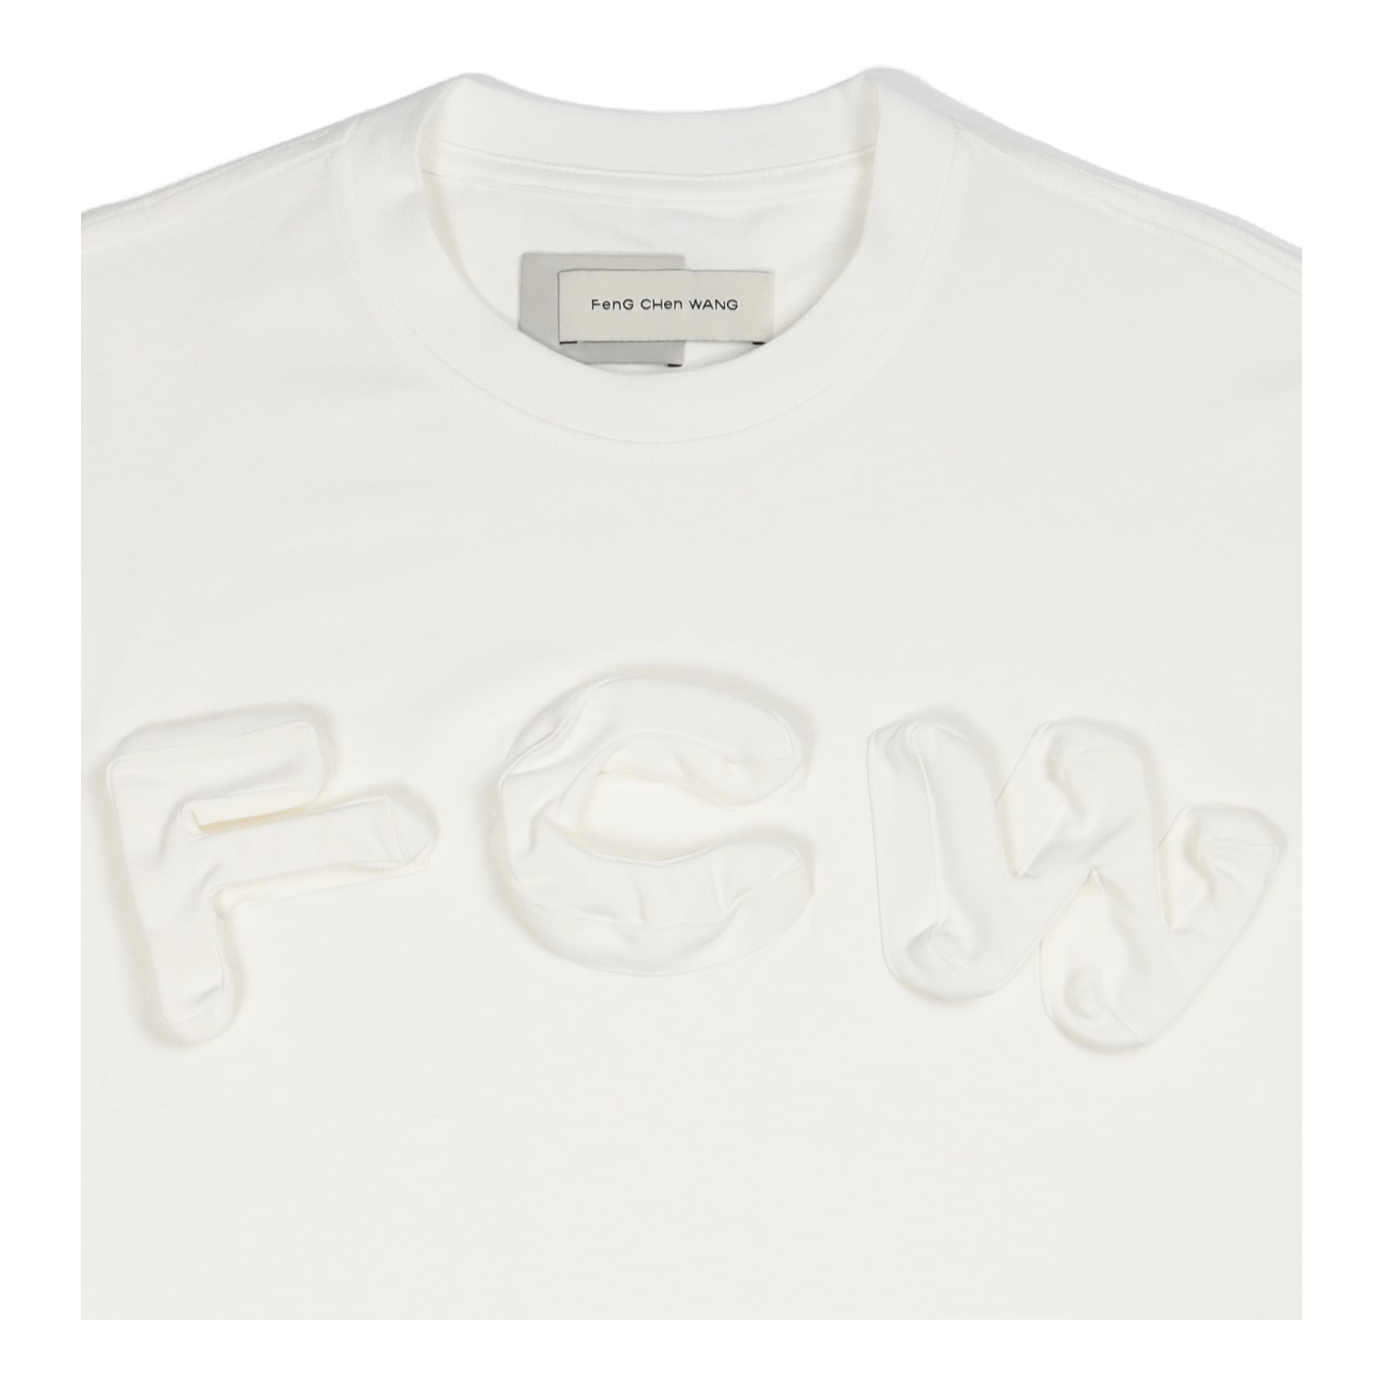 2in1 3d Logo T-shirt White